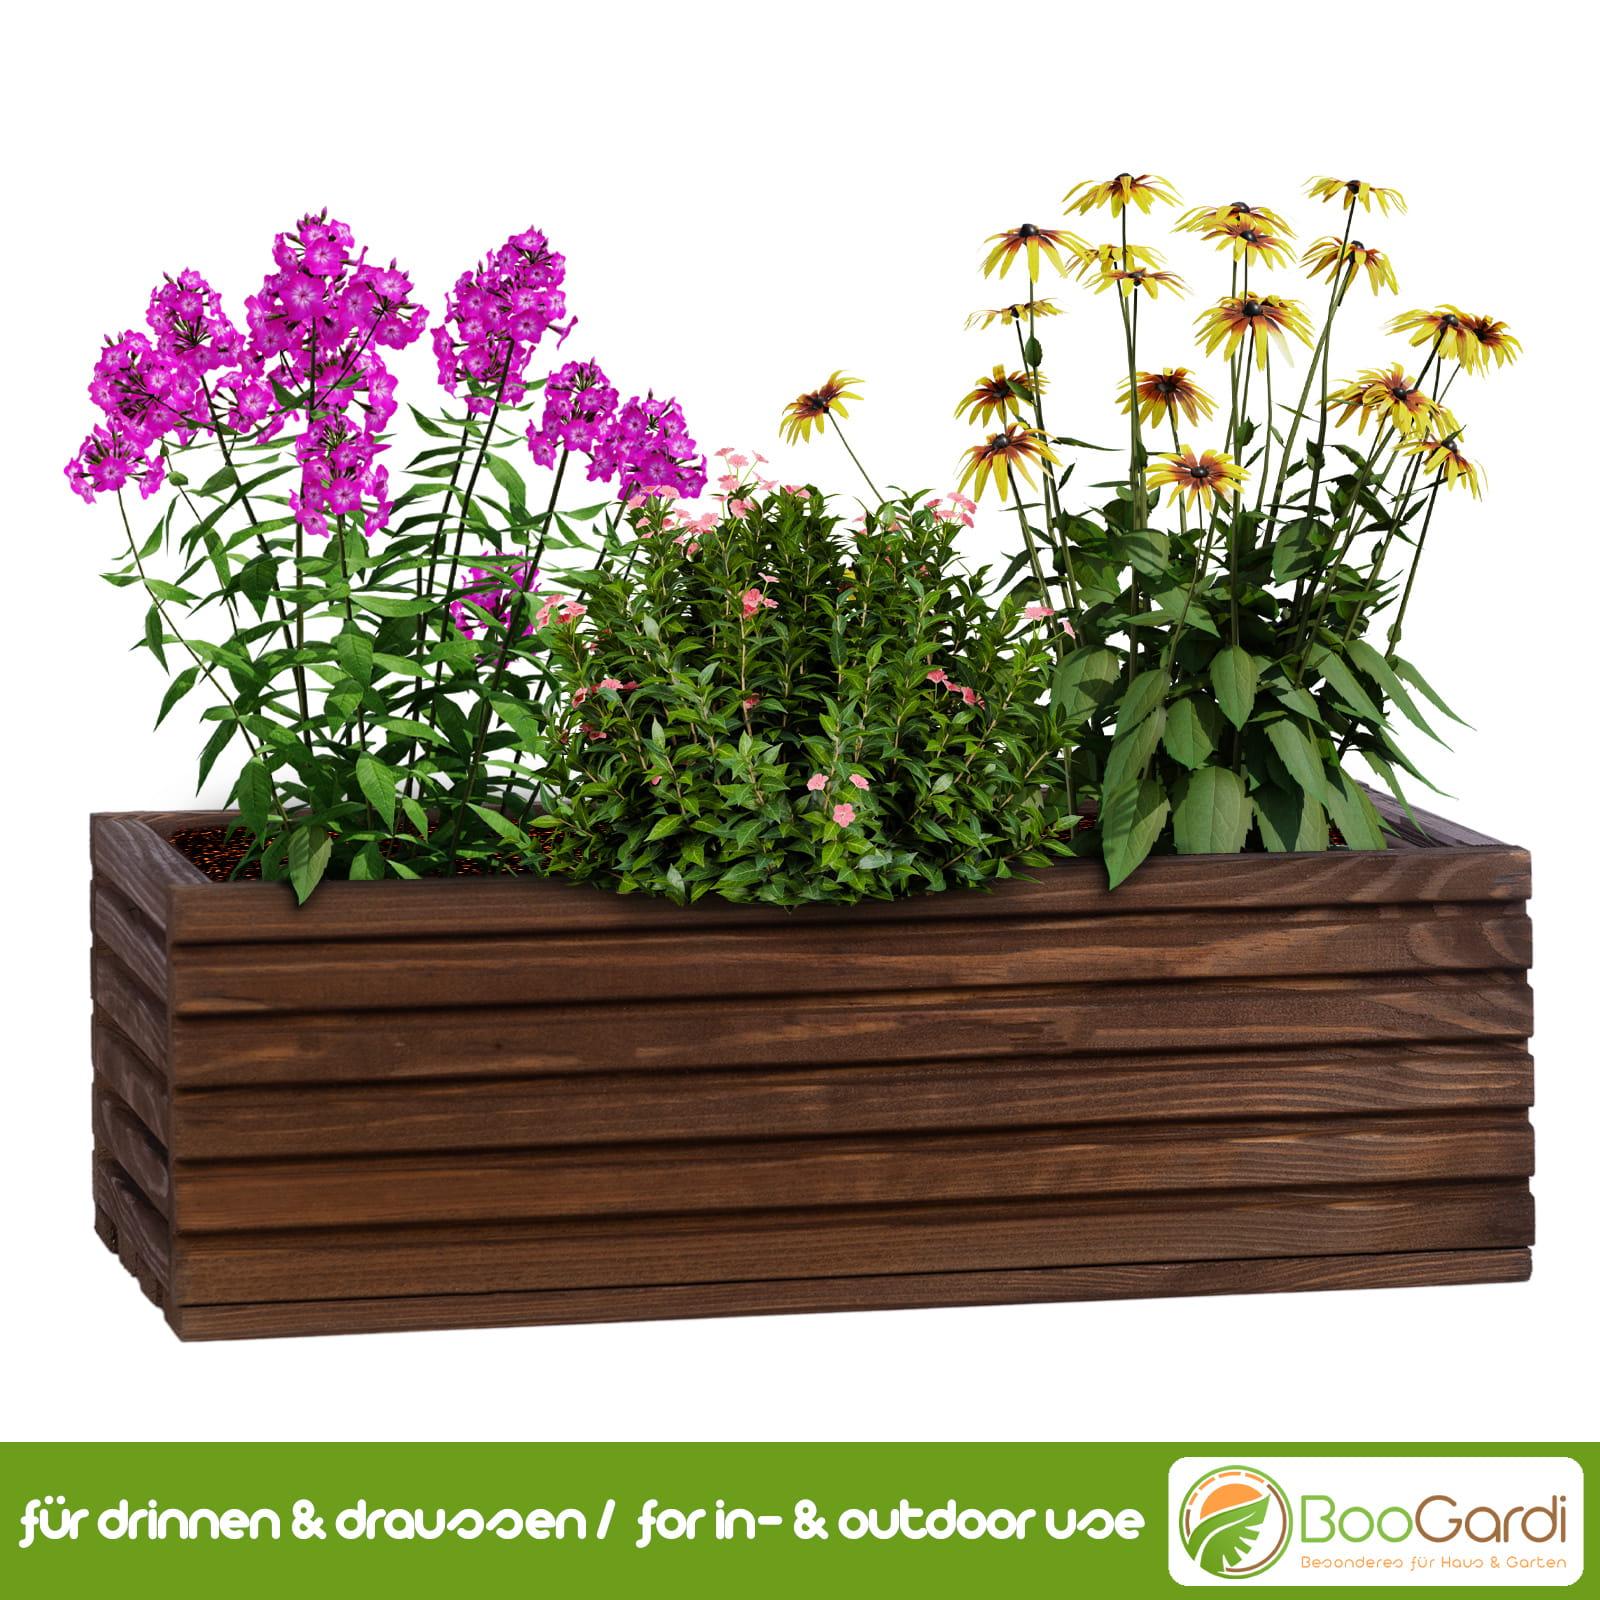 mit Garten & Haus BooGardi | Blumenkasten - Kunststoffeinsatz